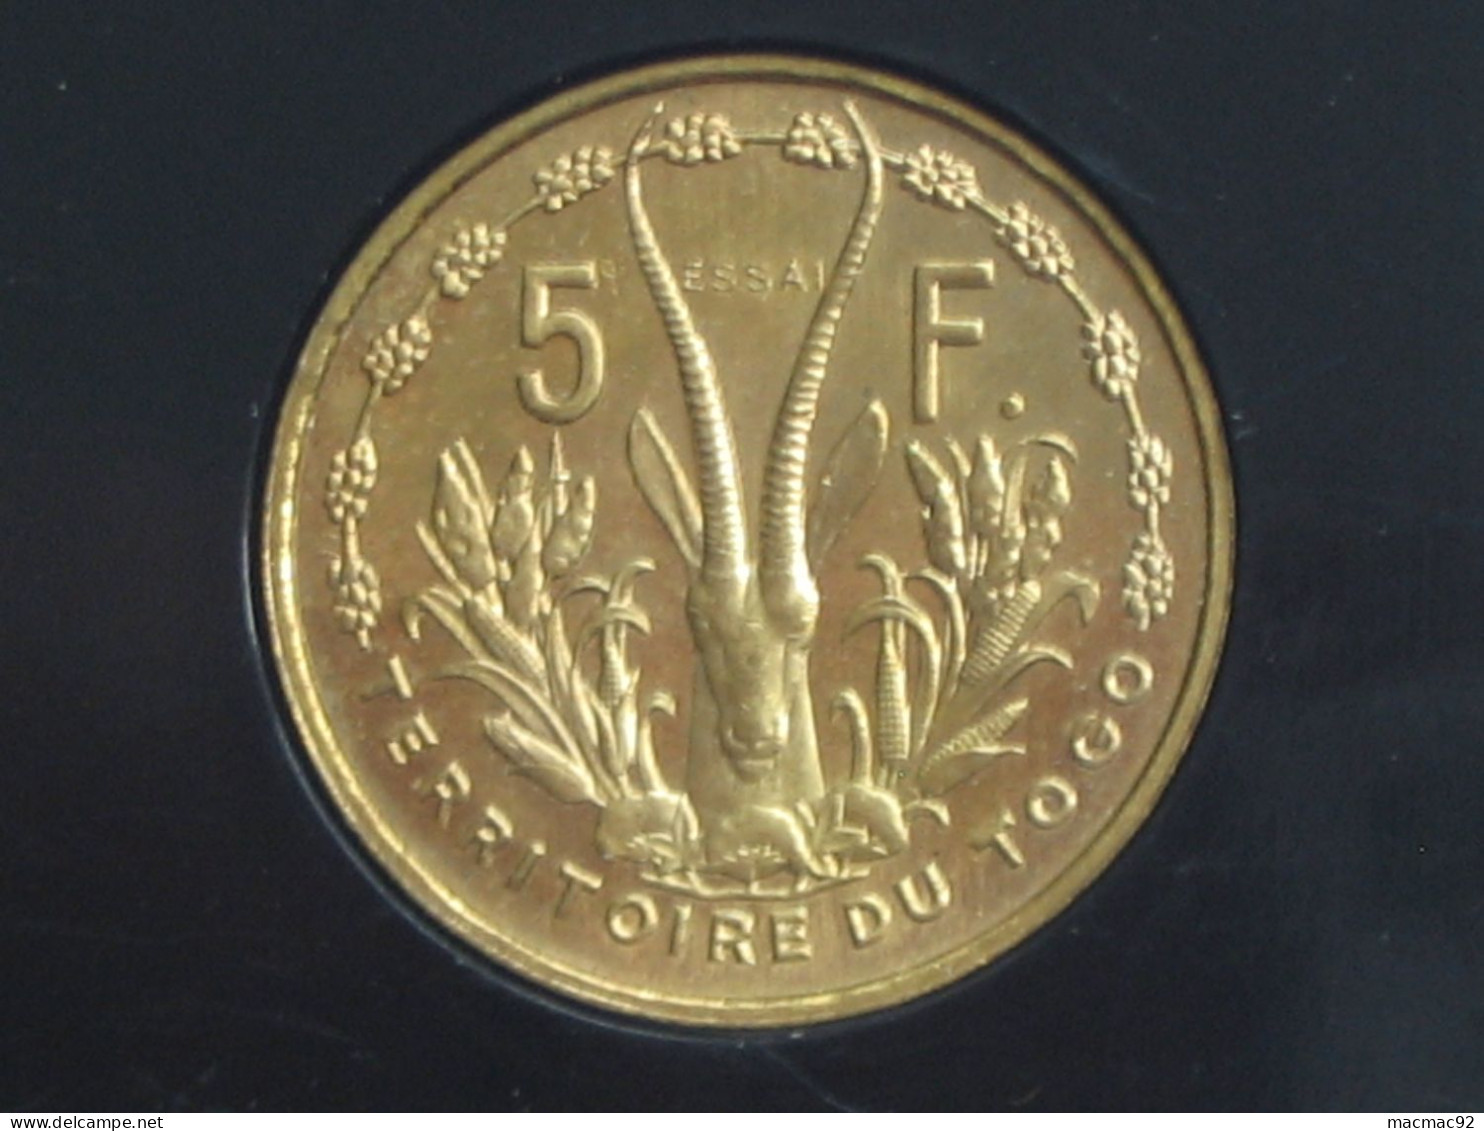 Coffret de 3 essais - 5 - 10 et 25 Francs 1956 - Union Francaise - Territoire du Togo  **** EN ACHAT IMMEDIAT   ****